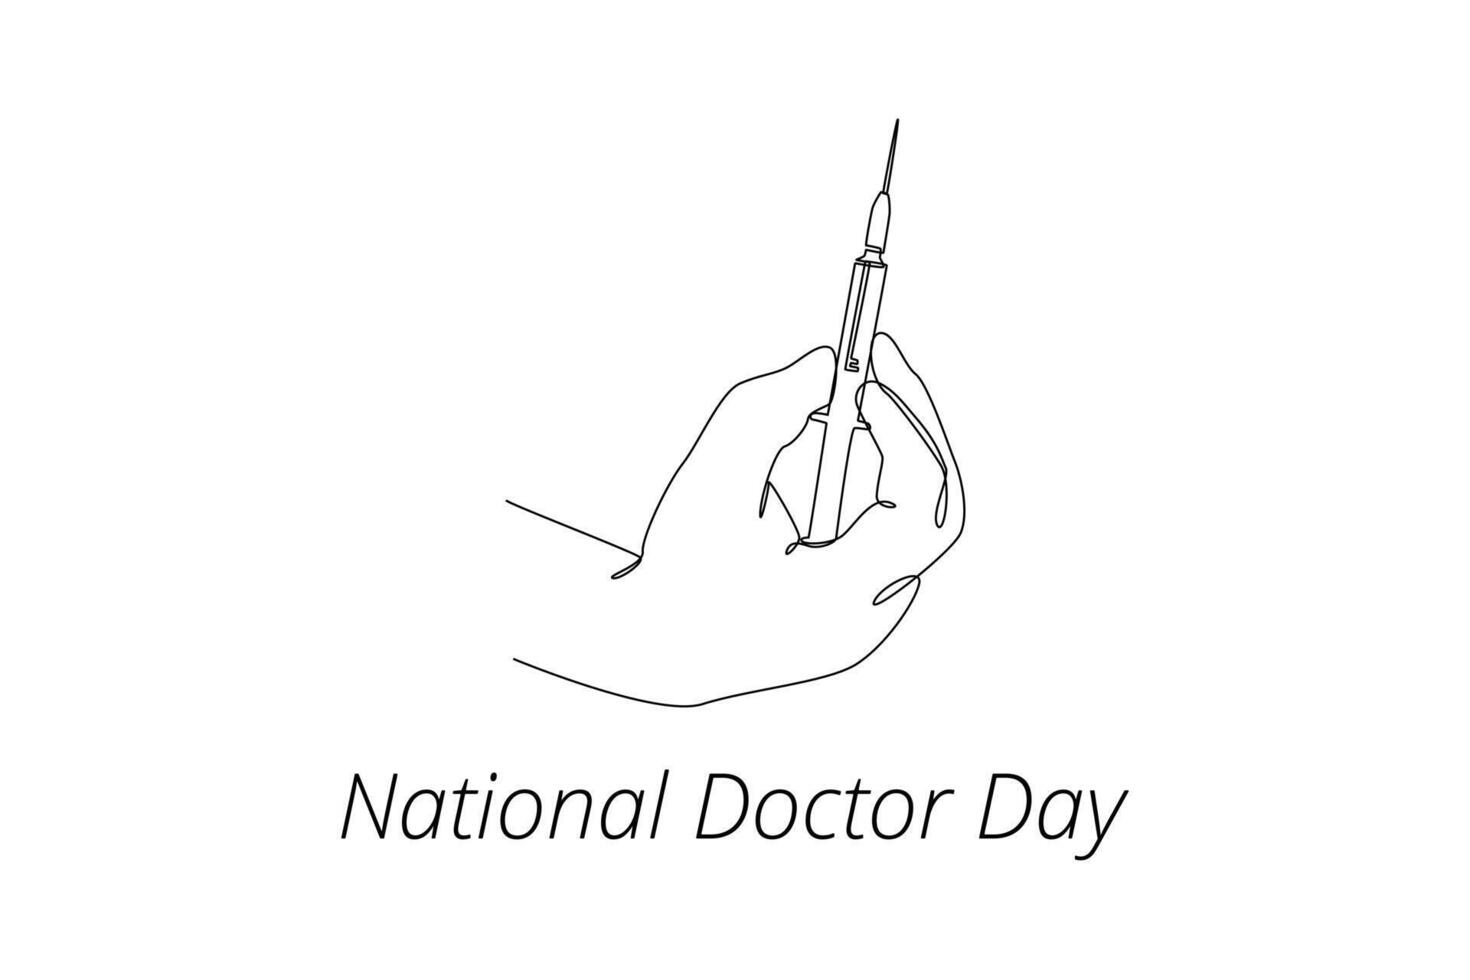 uno continuo línea dibujo de nacional doctores día concepto. garabatear vector ilustración en sencillo lineal estilo.